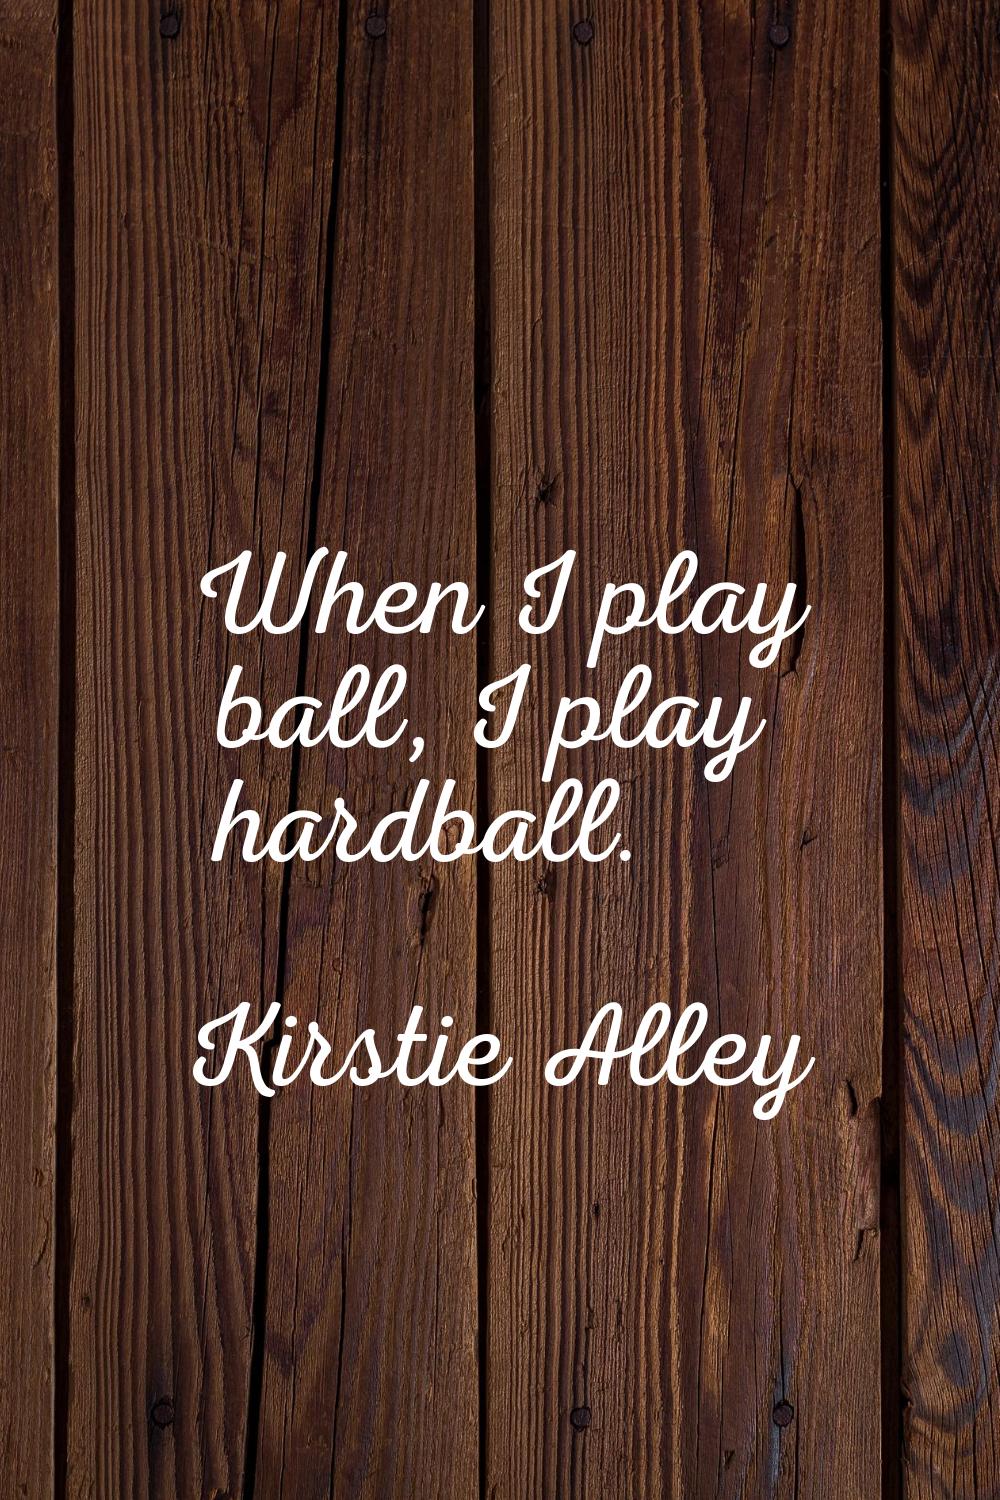 When I play ball, I play hardball.